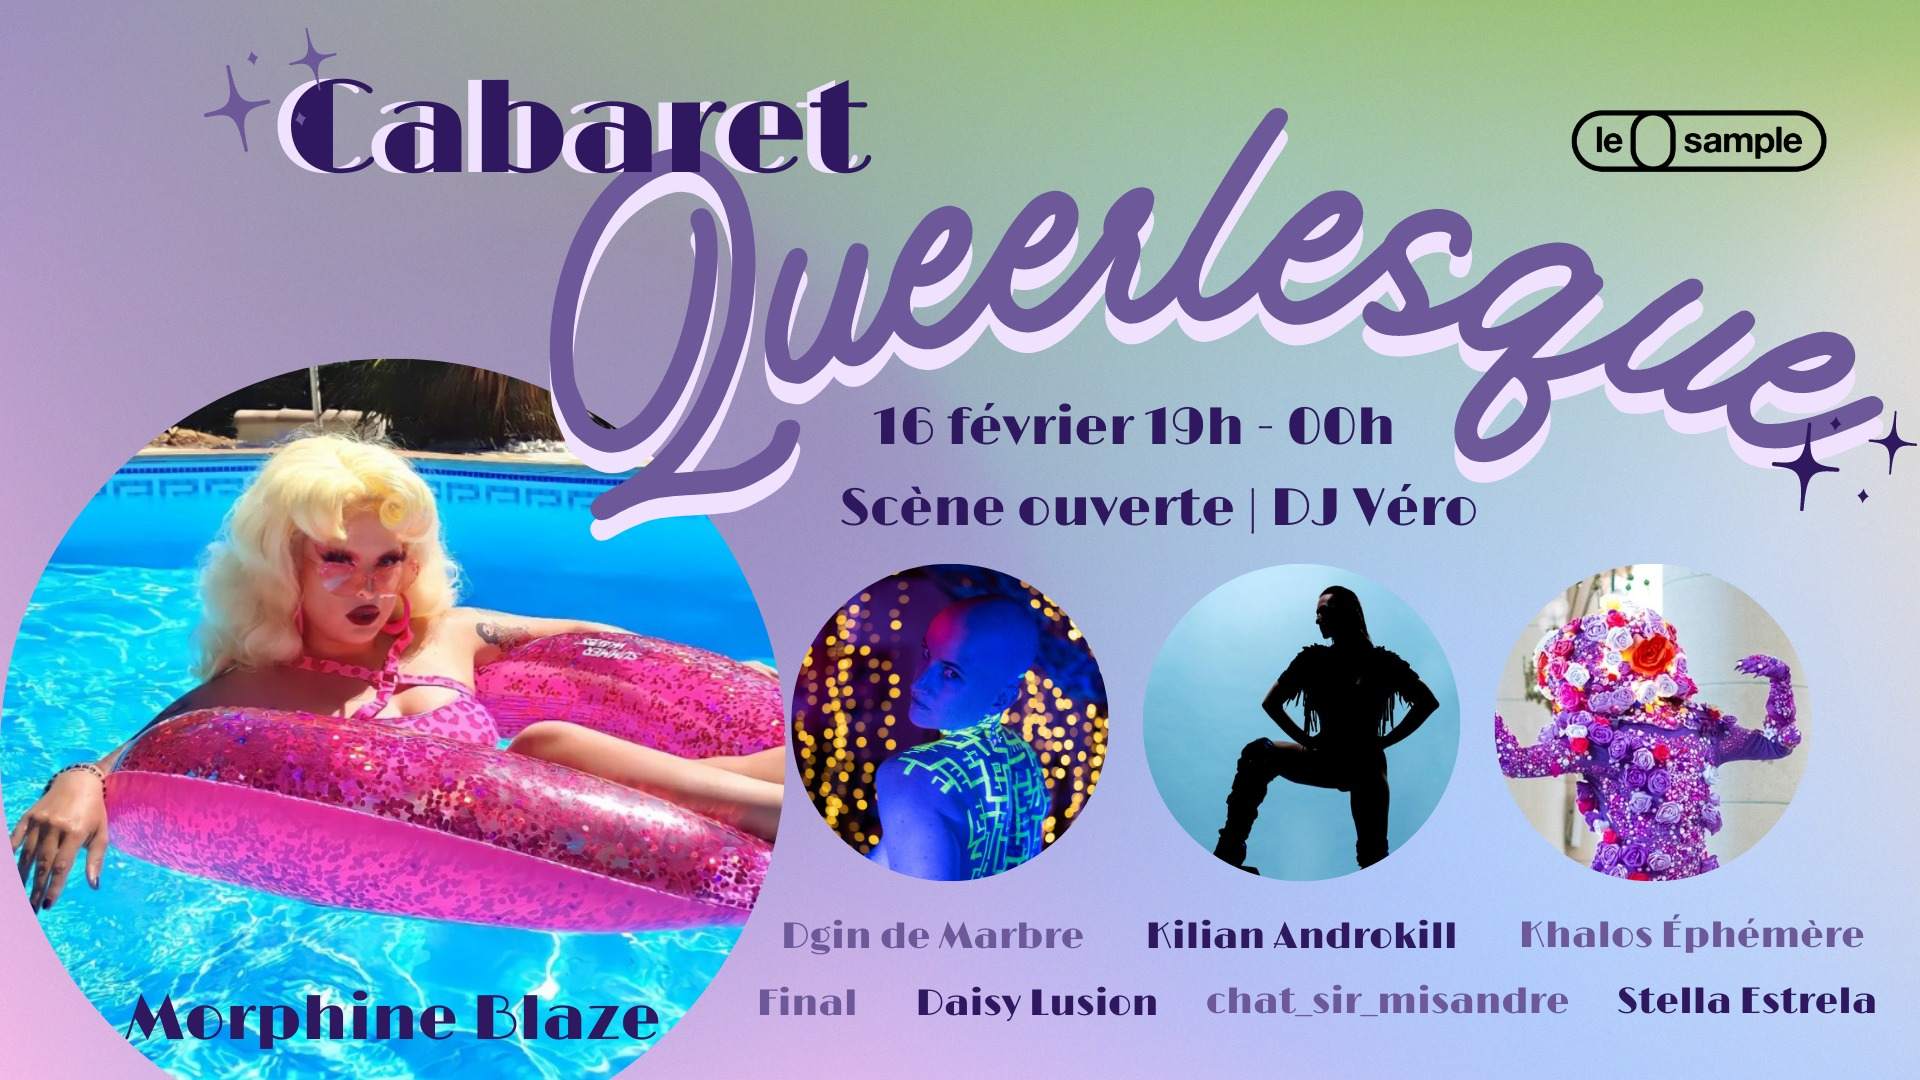 Cabaret Queerlesque at Le Sample, Paris